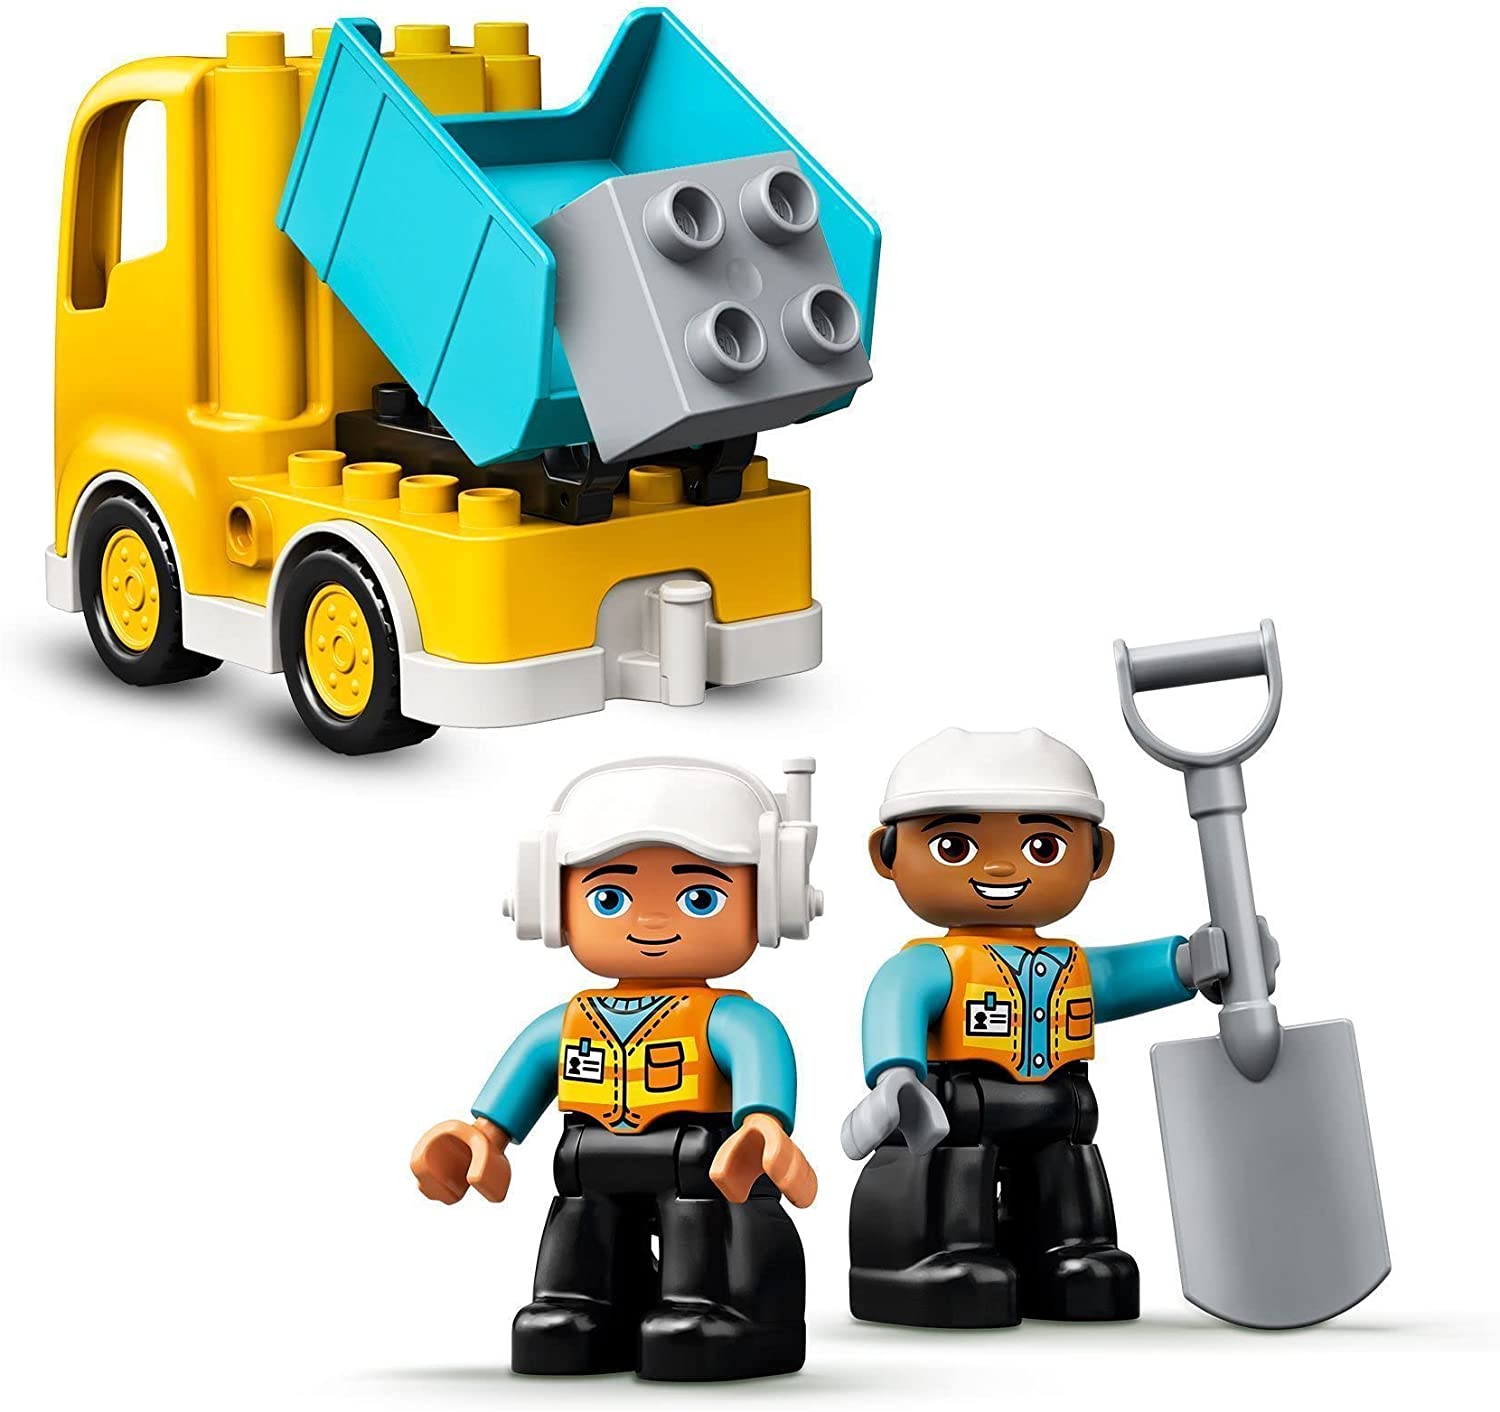 LEGO 10931 DUPLO Town Lastbil och grävmaskin, Byggsats med Leksakslastbil, Barnleksaker, Byggklossar